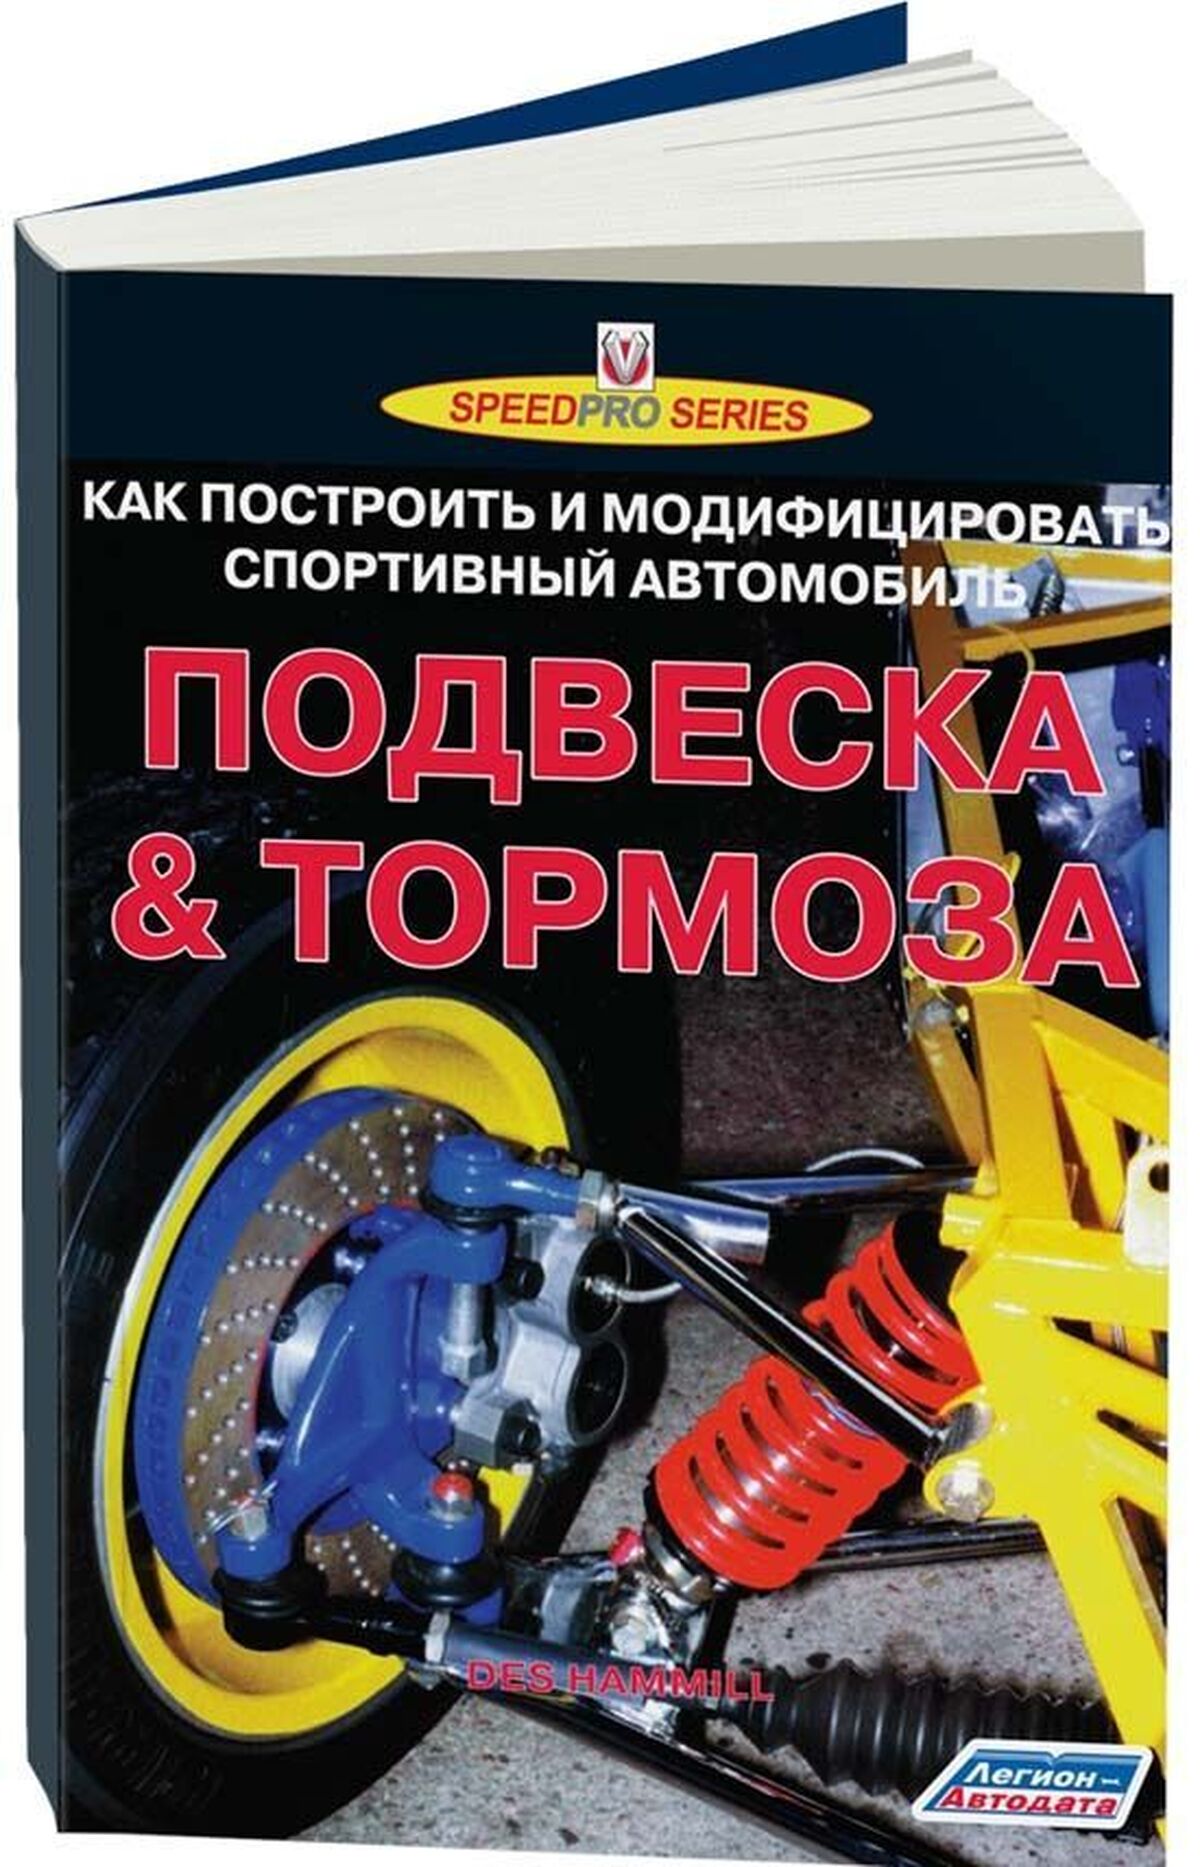 Книга: ПОДВЕСКА и ТОРМОЗА (как построить и модифицировать спортивный автомобиль) | Легион-Aвтодата